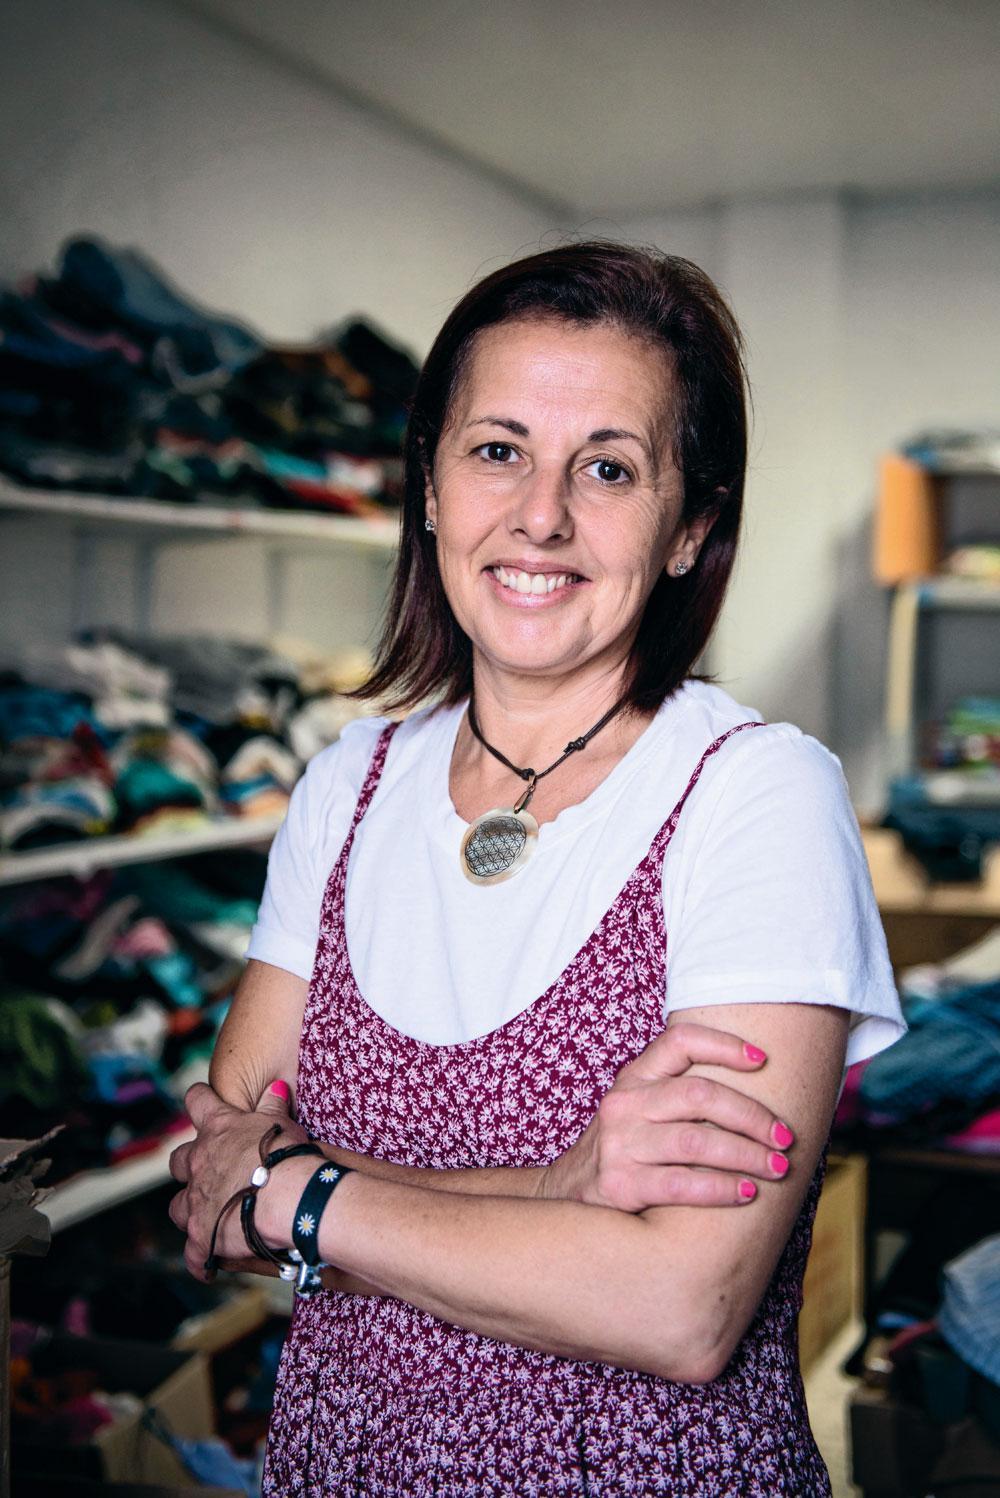 Maria Luisa Serrano, de Tarifeños solidarios. Elle collecte et distribue vêtements et linge de maison dans des locaux prêtés par la mairie de Tarifa.